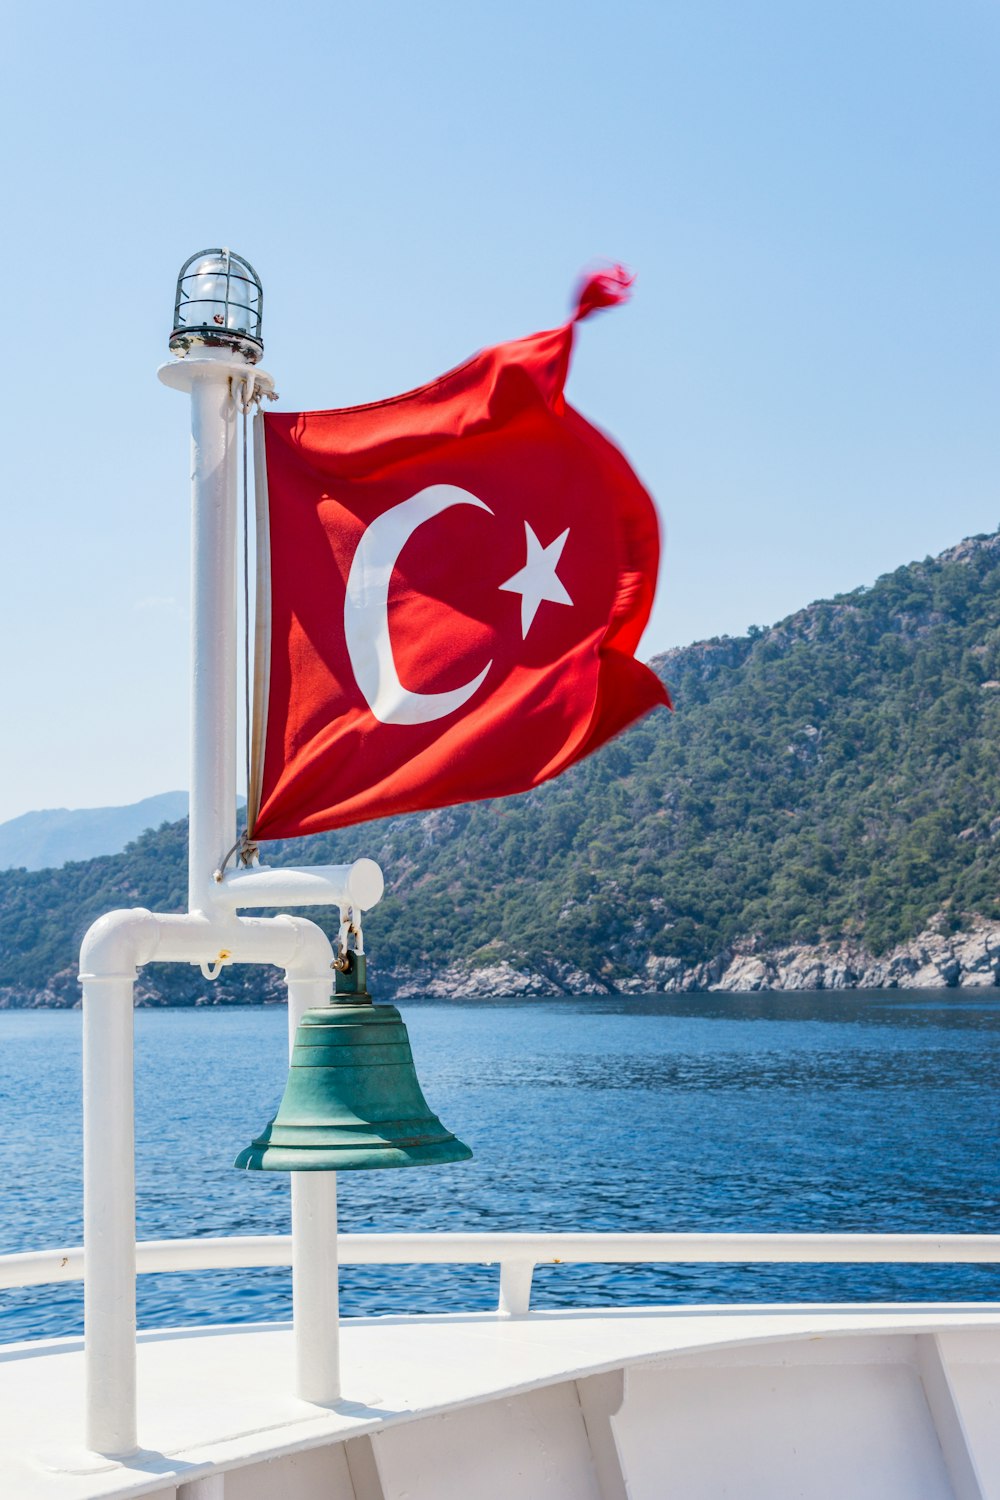 Türkische Flagge am Mast mit Glocke